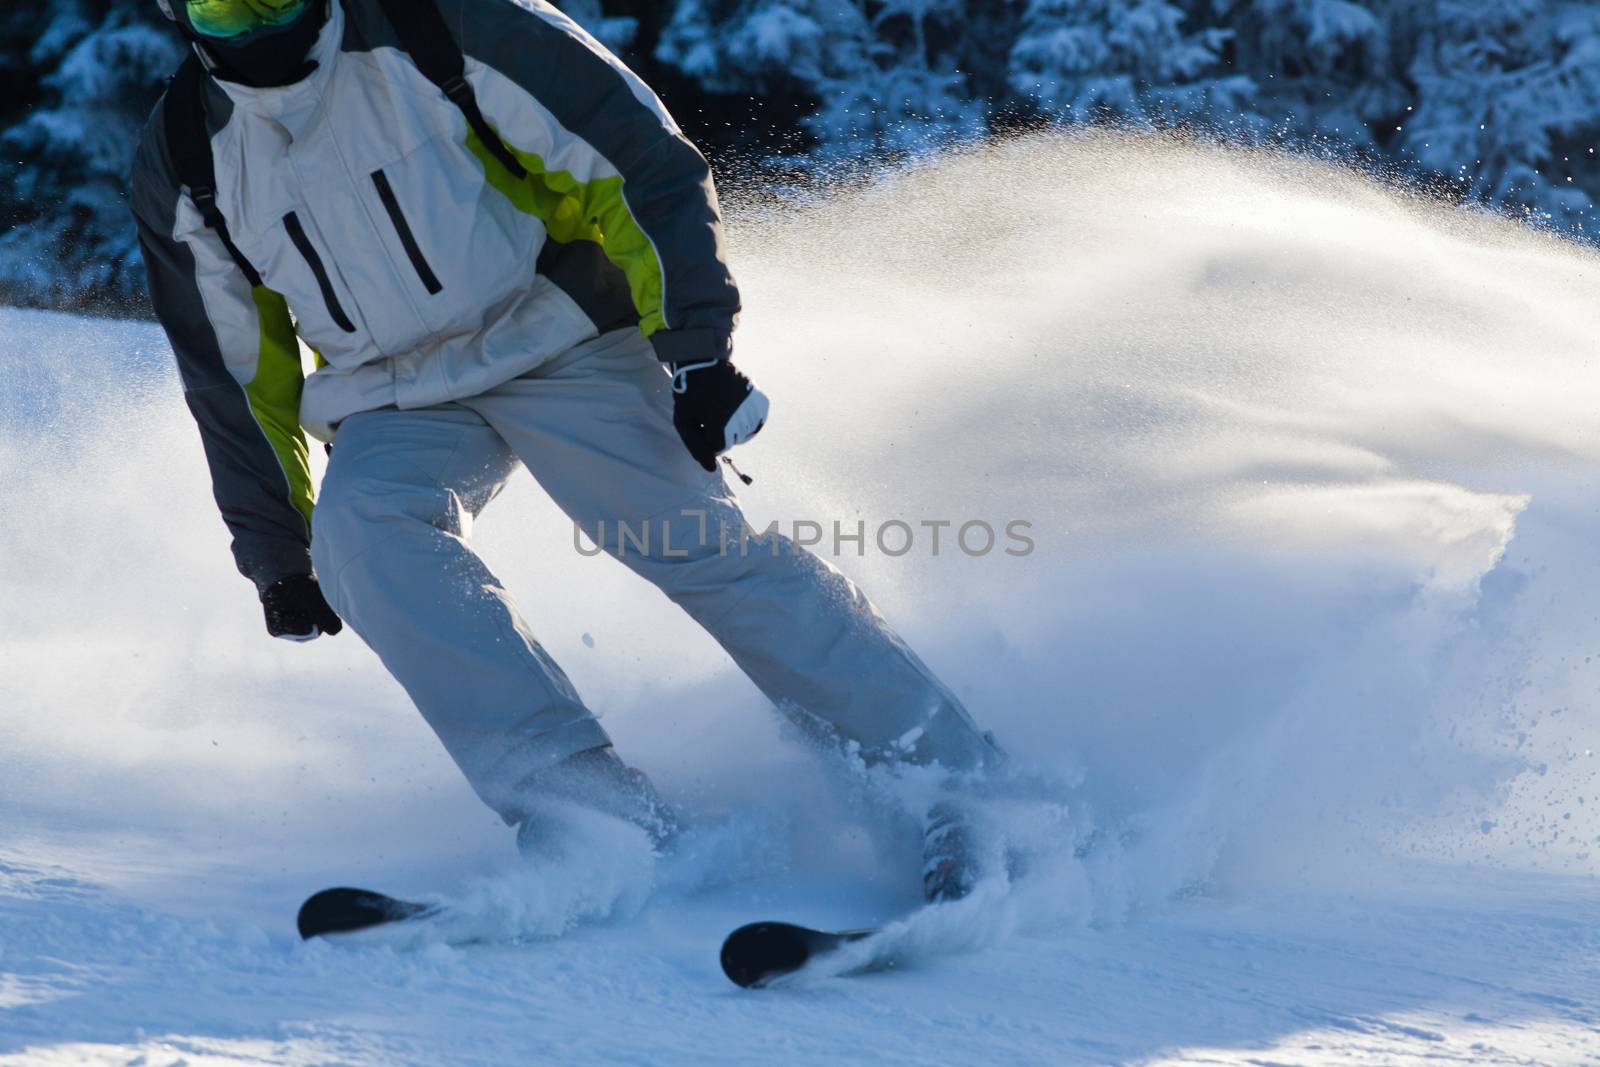 PALTINIS, ROMANIA - JANUARY 24, 2018: Unidentified skier on ski  by melis